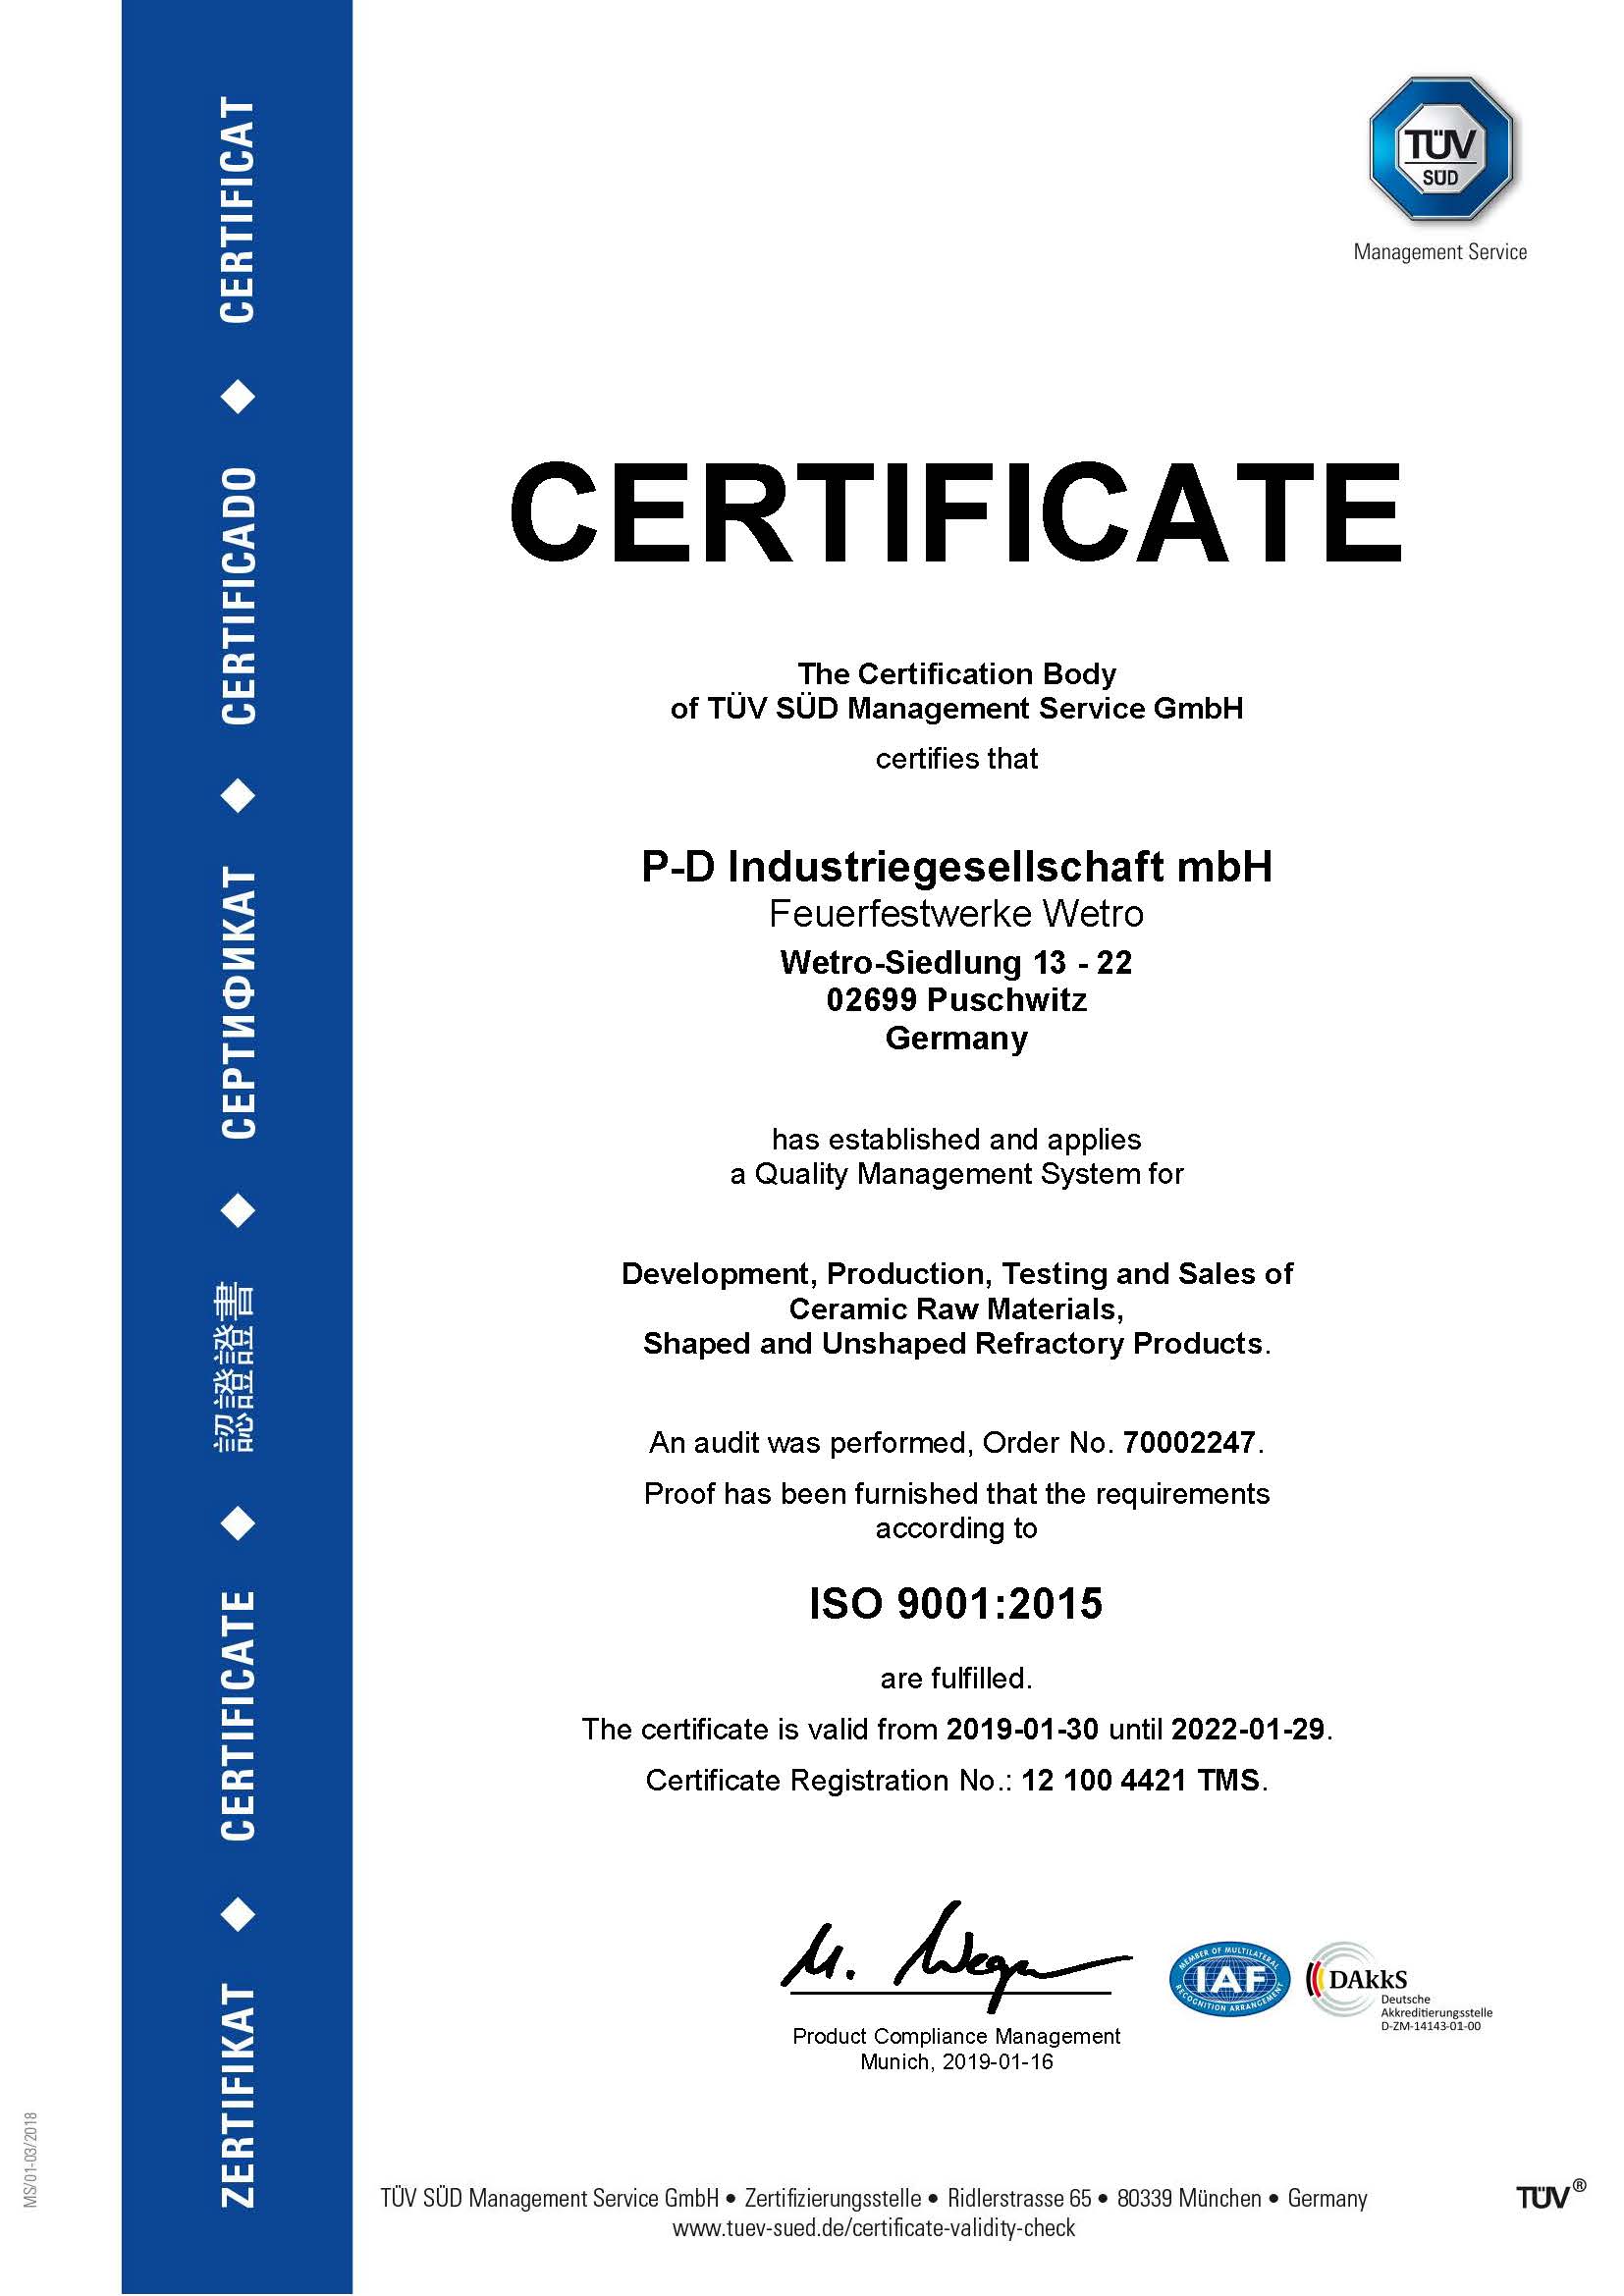 P-D Industriegesellschaft mbH, Feuerfestwerke Wetro · ISO 9001:2015 